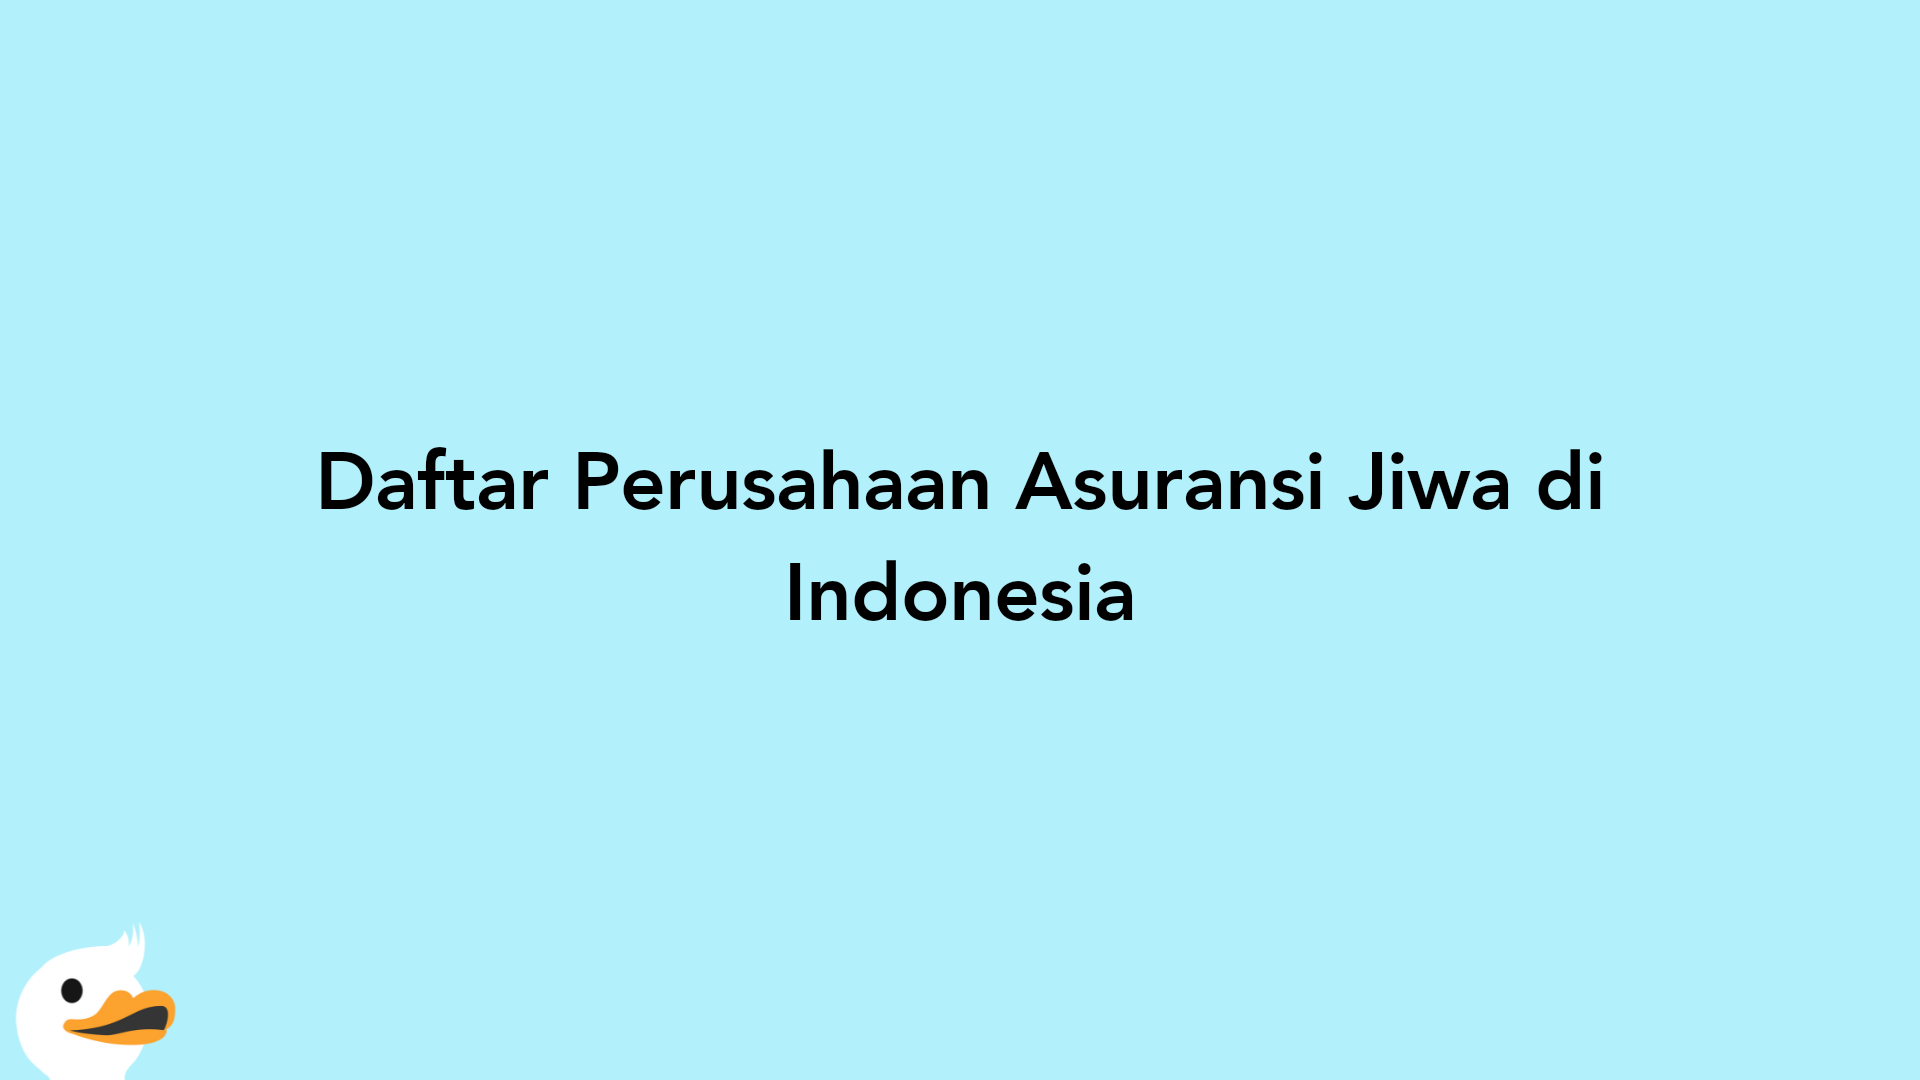 Daftar Perusahaan Asuransi Jiwa di Indonesia